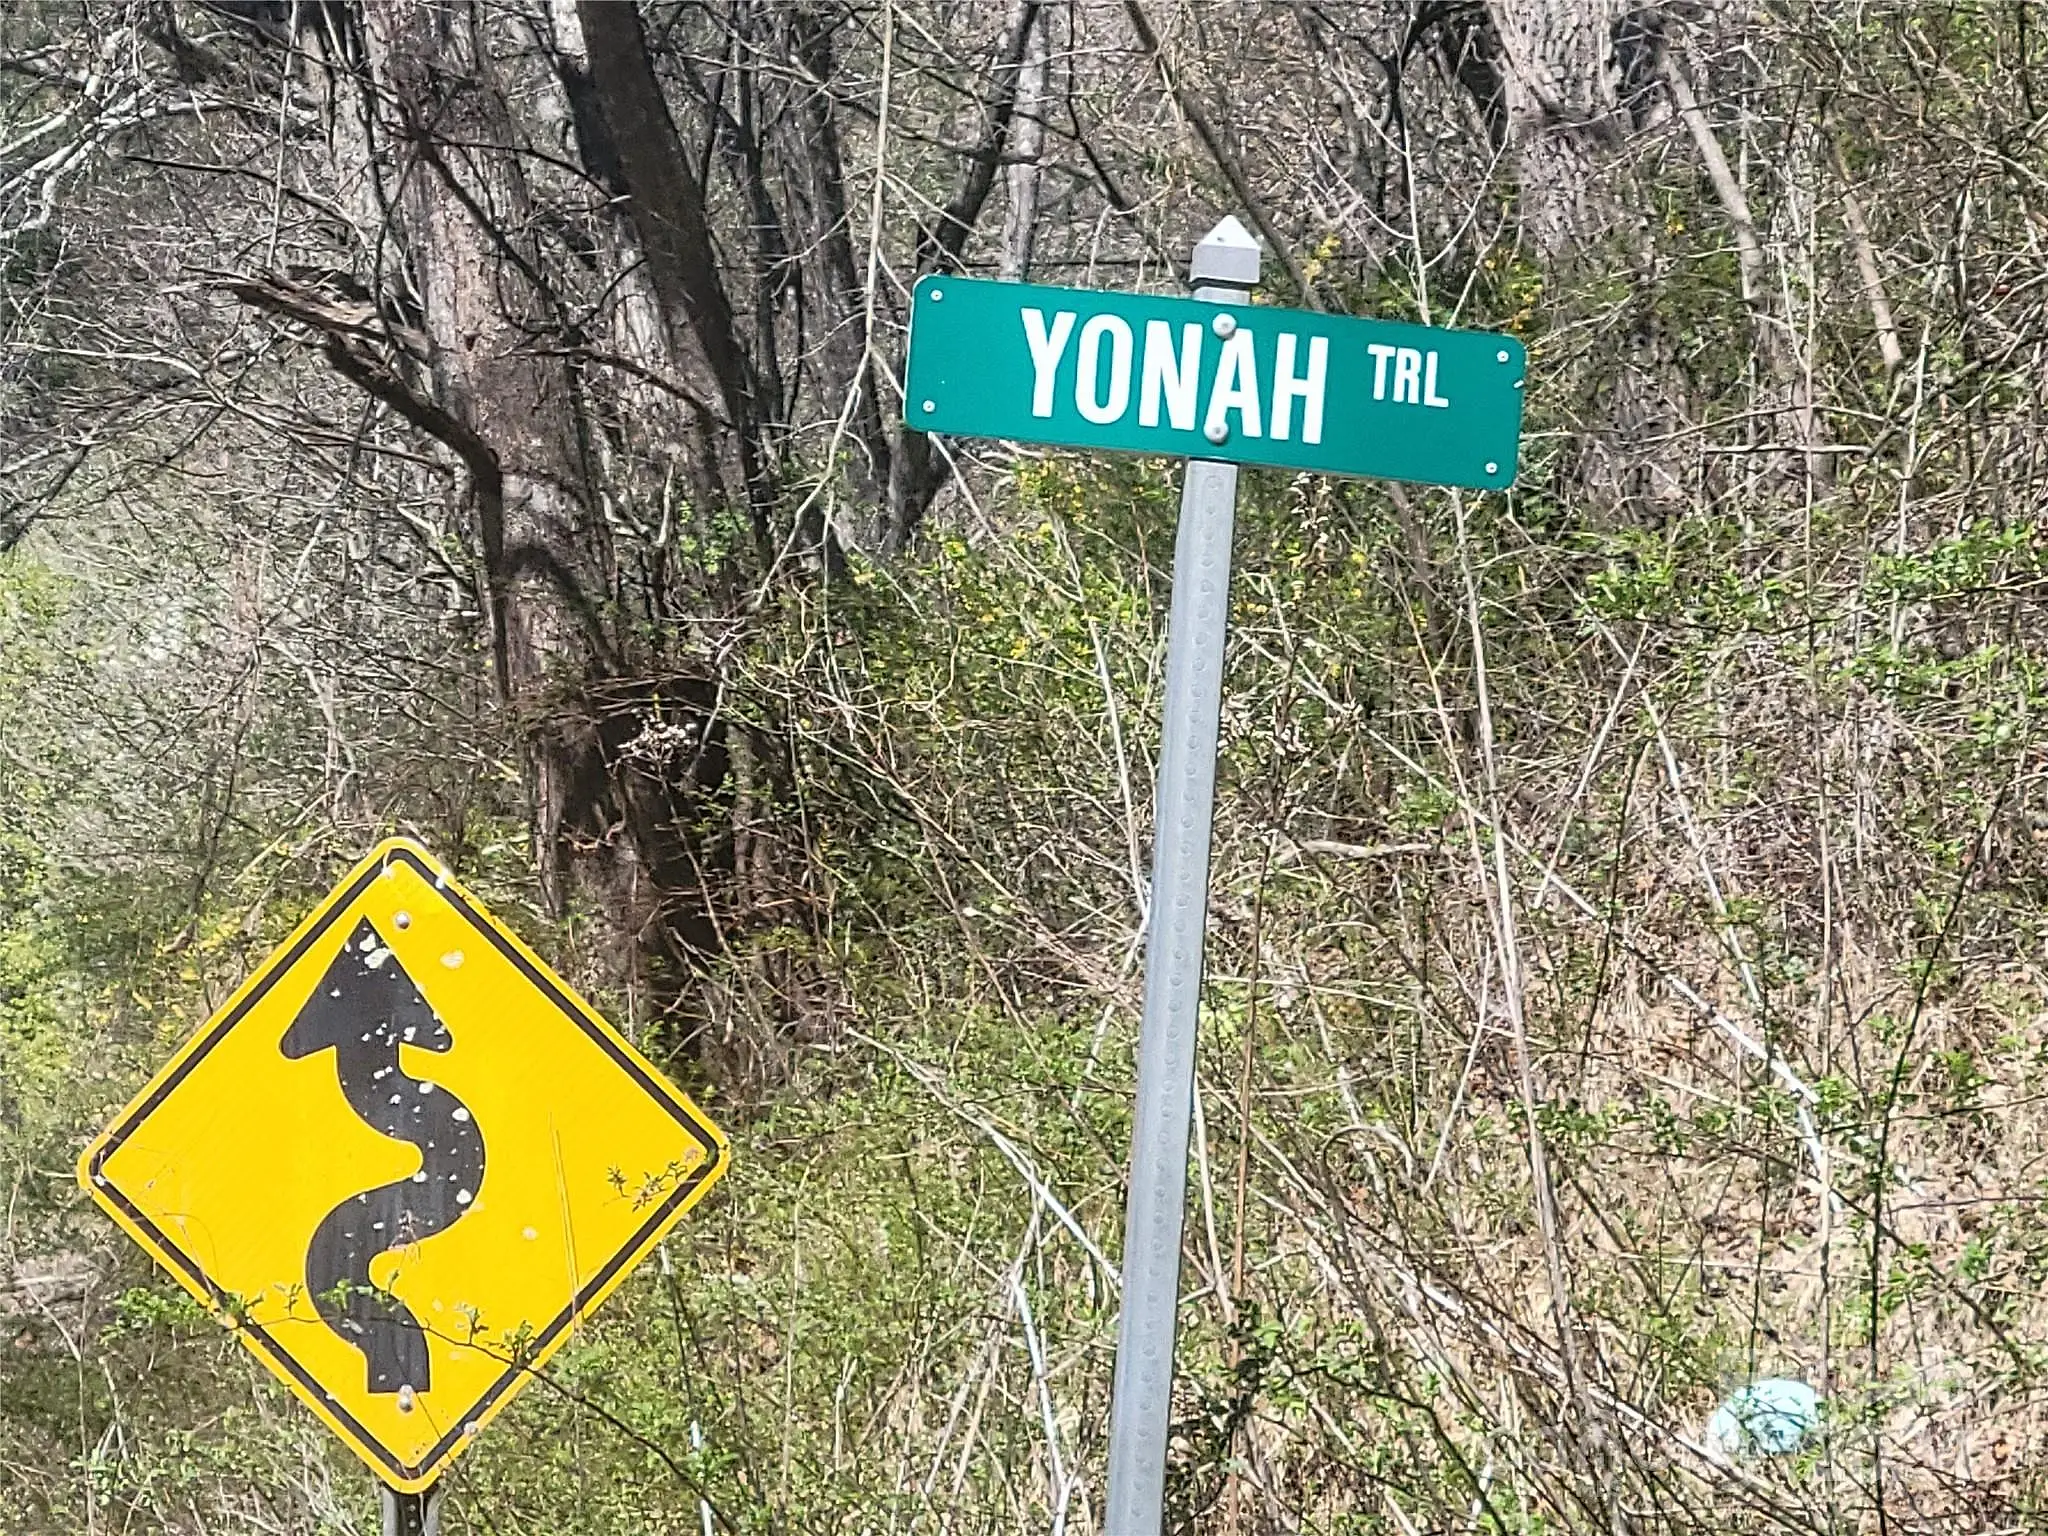 775 Yonah Trail